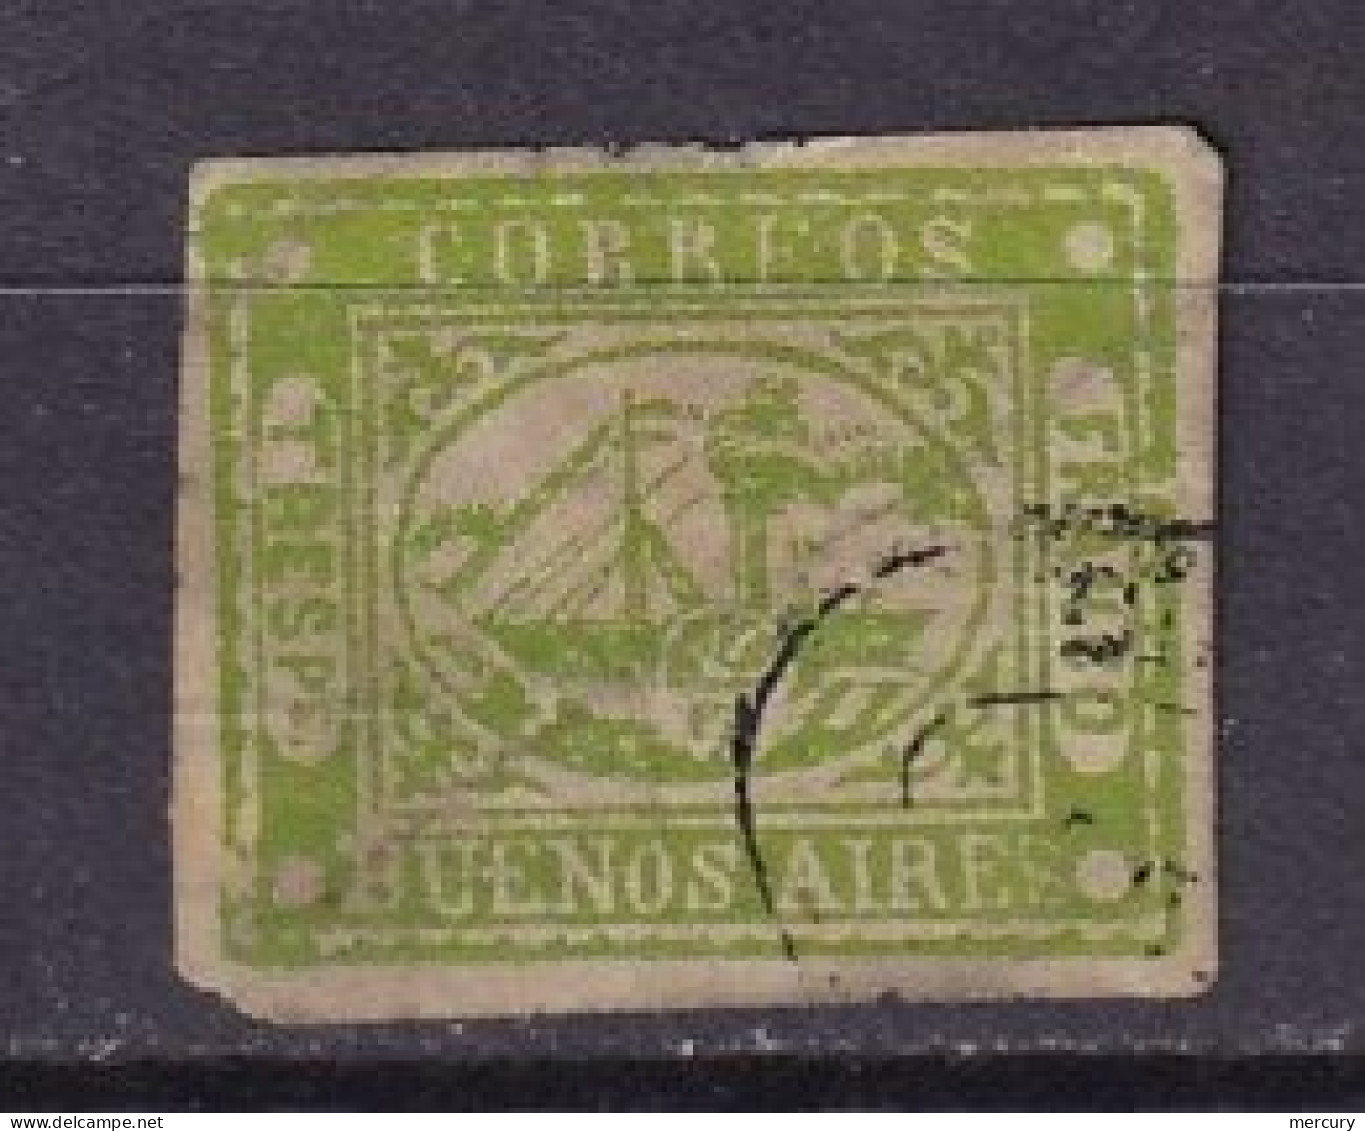 ARGENTINE _ BUENOS AIRES - 3 P. De 1858 FAUX - Buenos Aires (1858-1864)